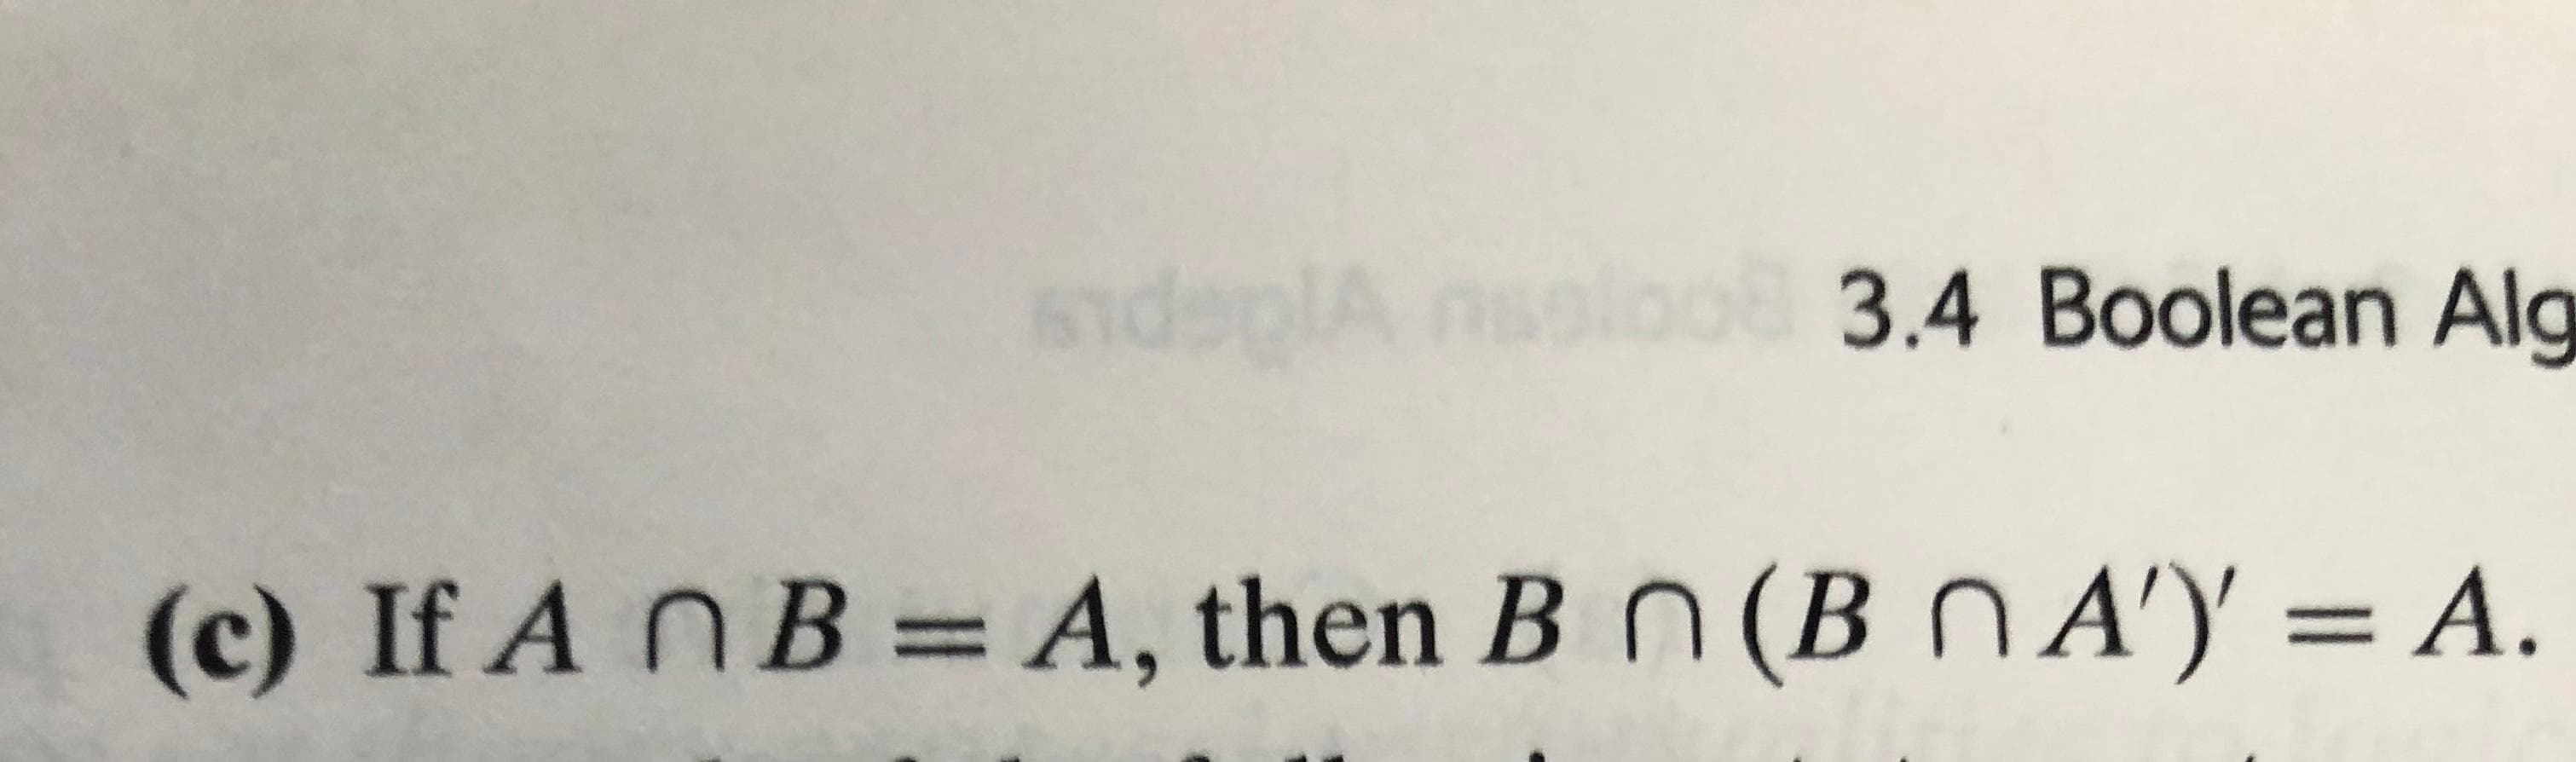 Sndepl
3.4 Boolean Alg
A, then B n (B nA')
(c) If A nB
A.
